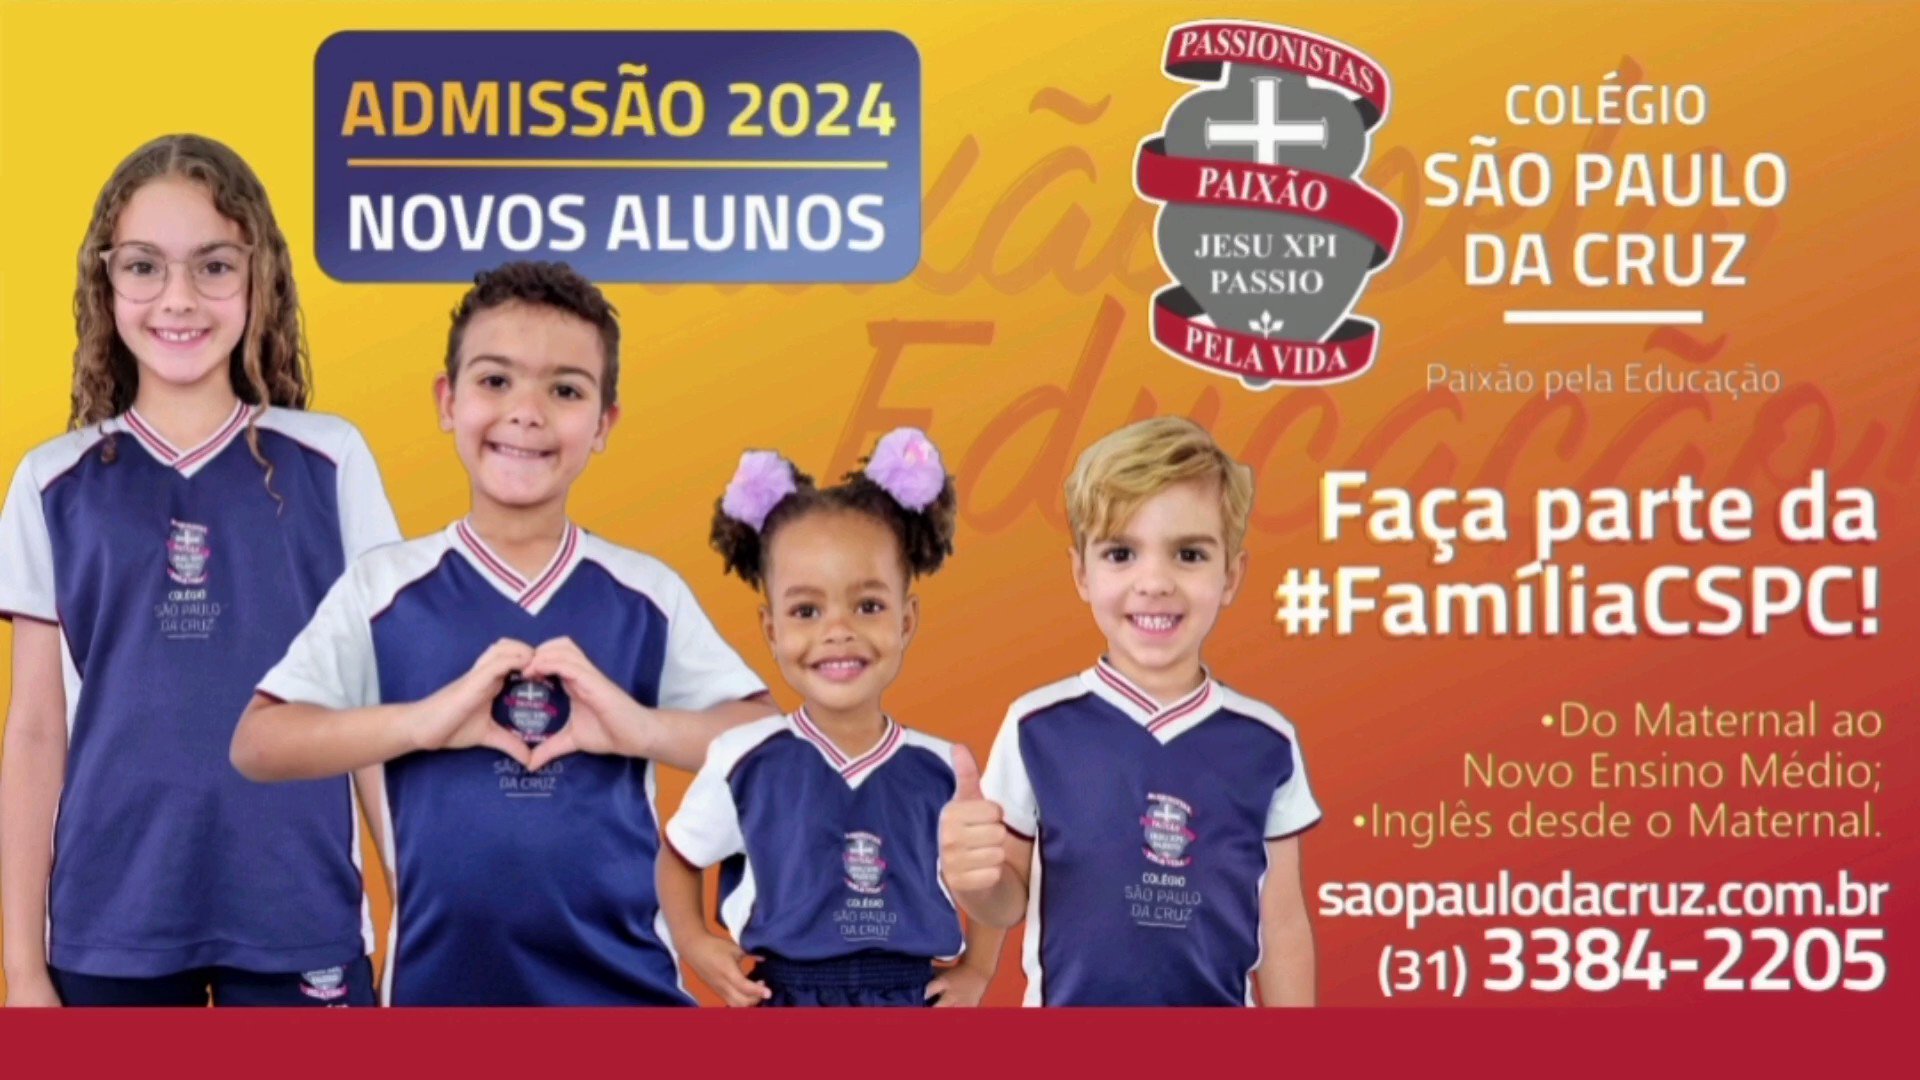 COMUNICADO - COPA DO MUNDO 2022 - Colégio São Paulo da Cruz, Barreiro